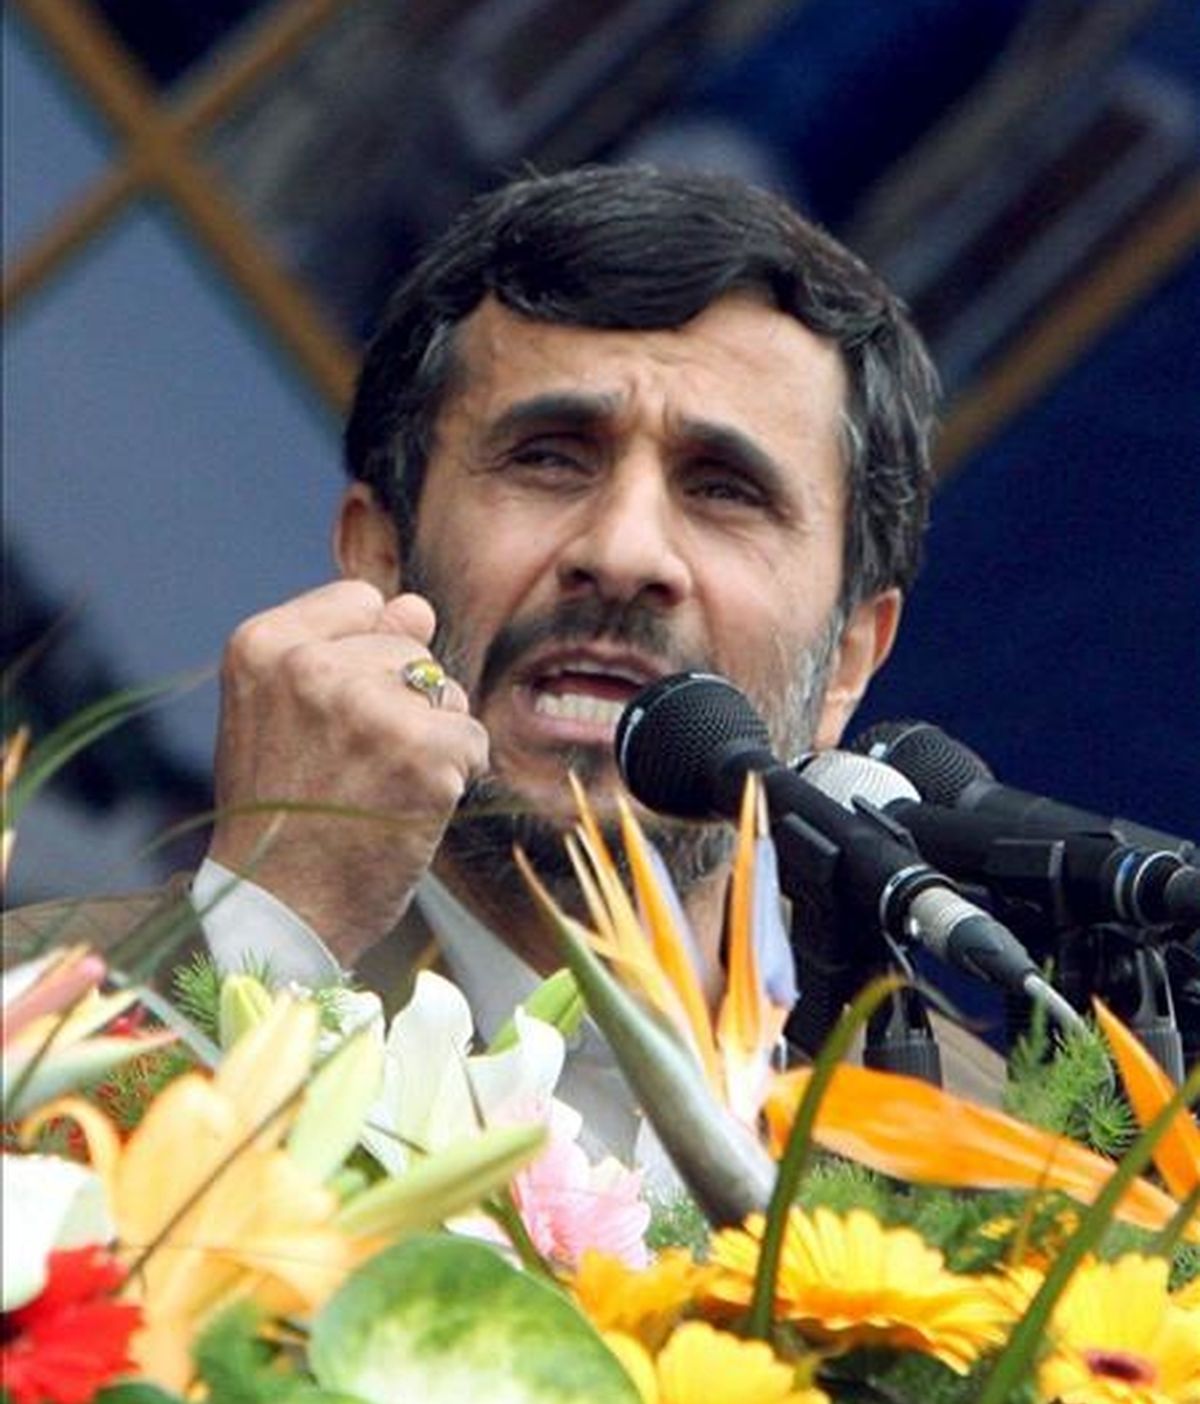 El presidente iraní, Mahmud Ahmadinejad, pronuncia un discurso durante la ceremonia conmemorativa por el 30 aniversario de la revolución islámica, en Teherán (Irán), hoy, 10 de febrero. Ahmadineyad aseguró que su país está dispuesto al diálogo con Estados Unidos, pero en condiciones de "igualdad y de respeto mutuo". El líder iraní hizo estas declaraciones en Teherán ante decenas de miles de personas con motivo de la celebración del 30 aniversario del triunfo de la revolución islámica y horas después de que el presidente de EEUU, Barack Obama, expresara su deseo de mantener un diálogo directo con Irán. EFE